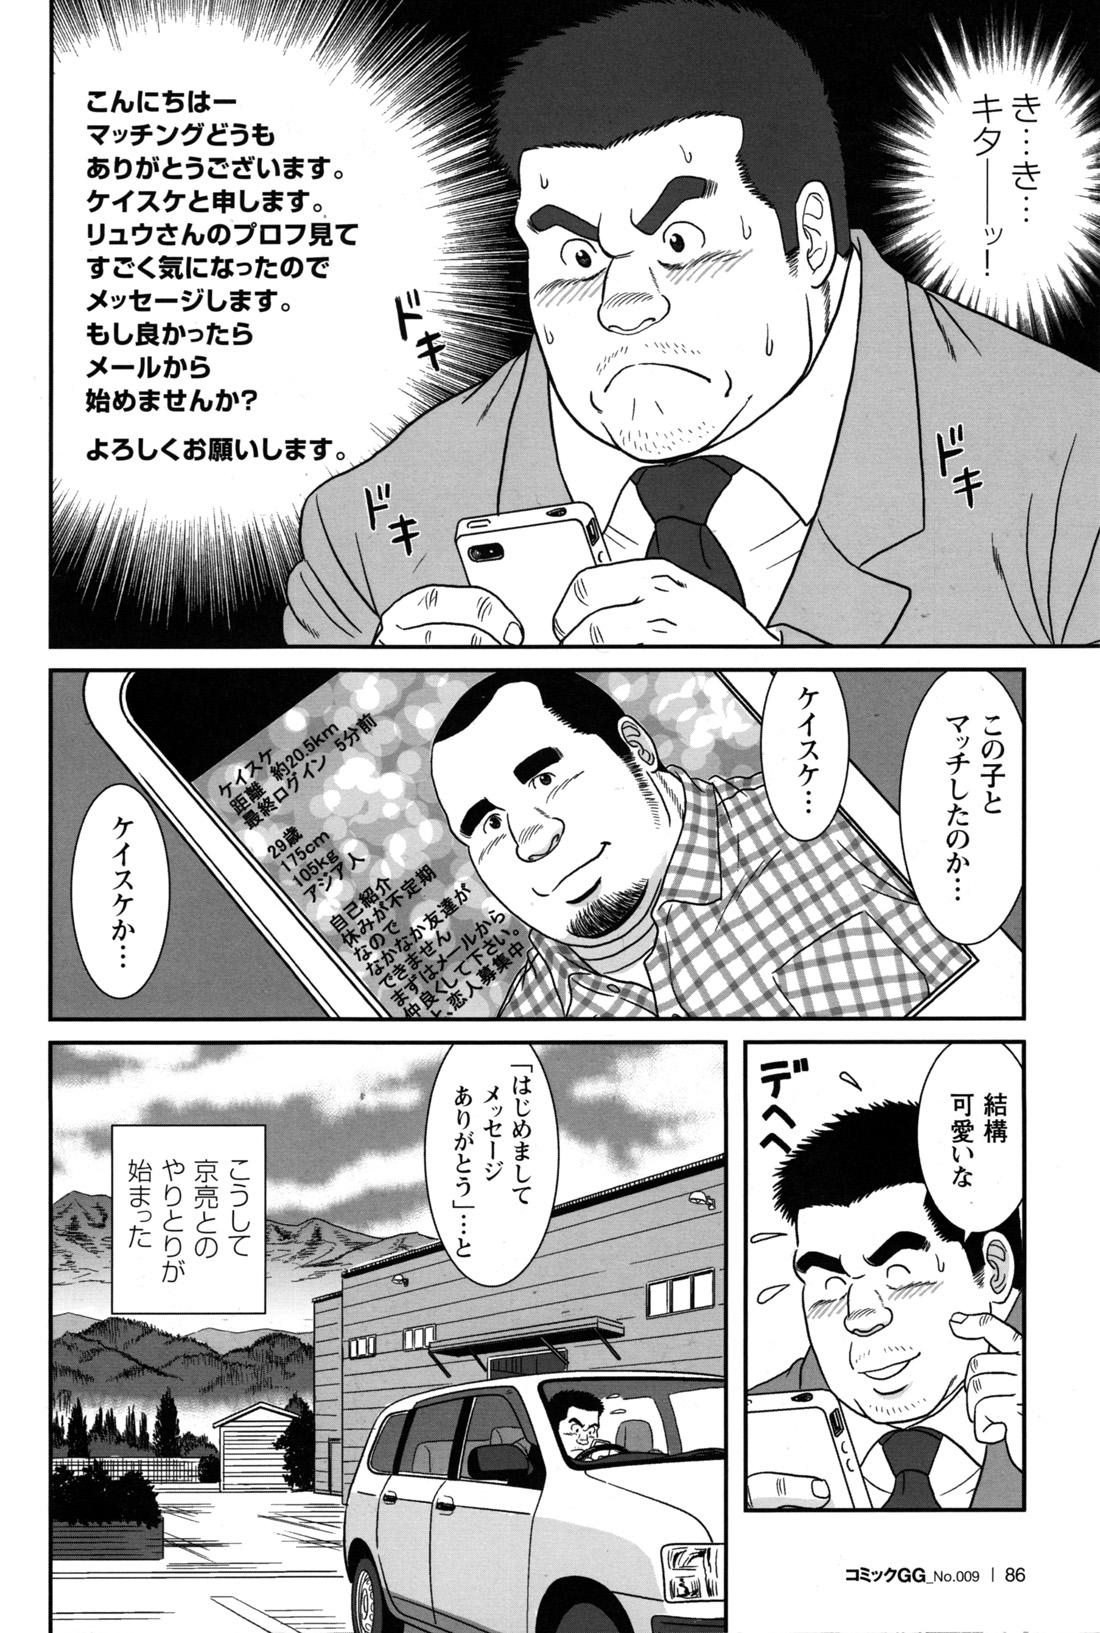 Comic G-men Gaho No.09 Gacchibi Zeme 82